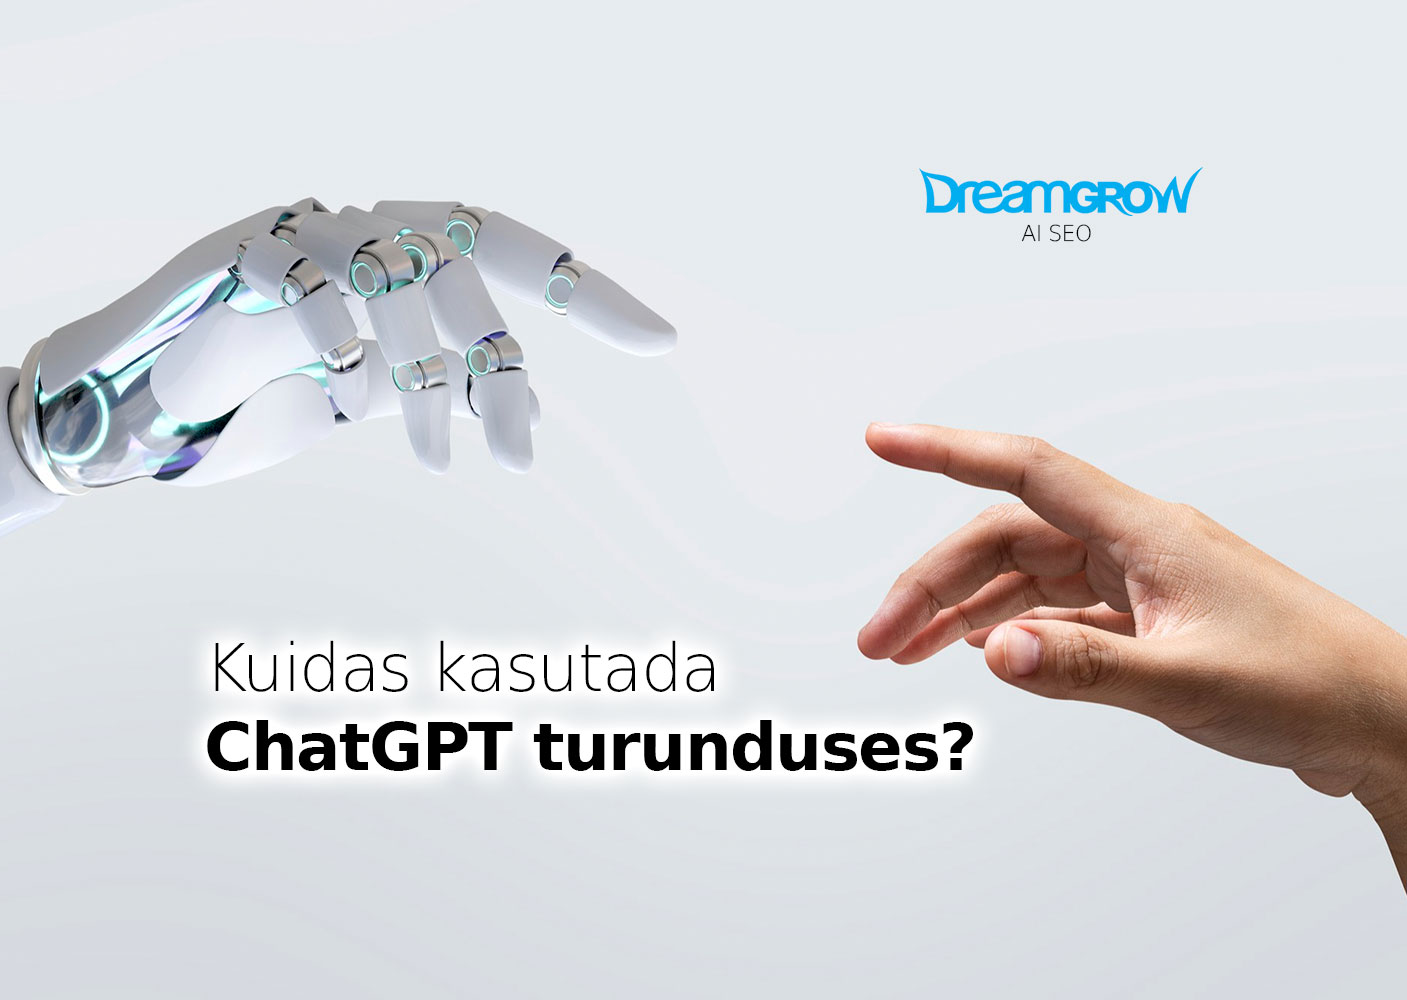 Kuidas kasutada ChatGPT turunduses?